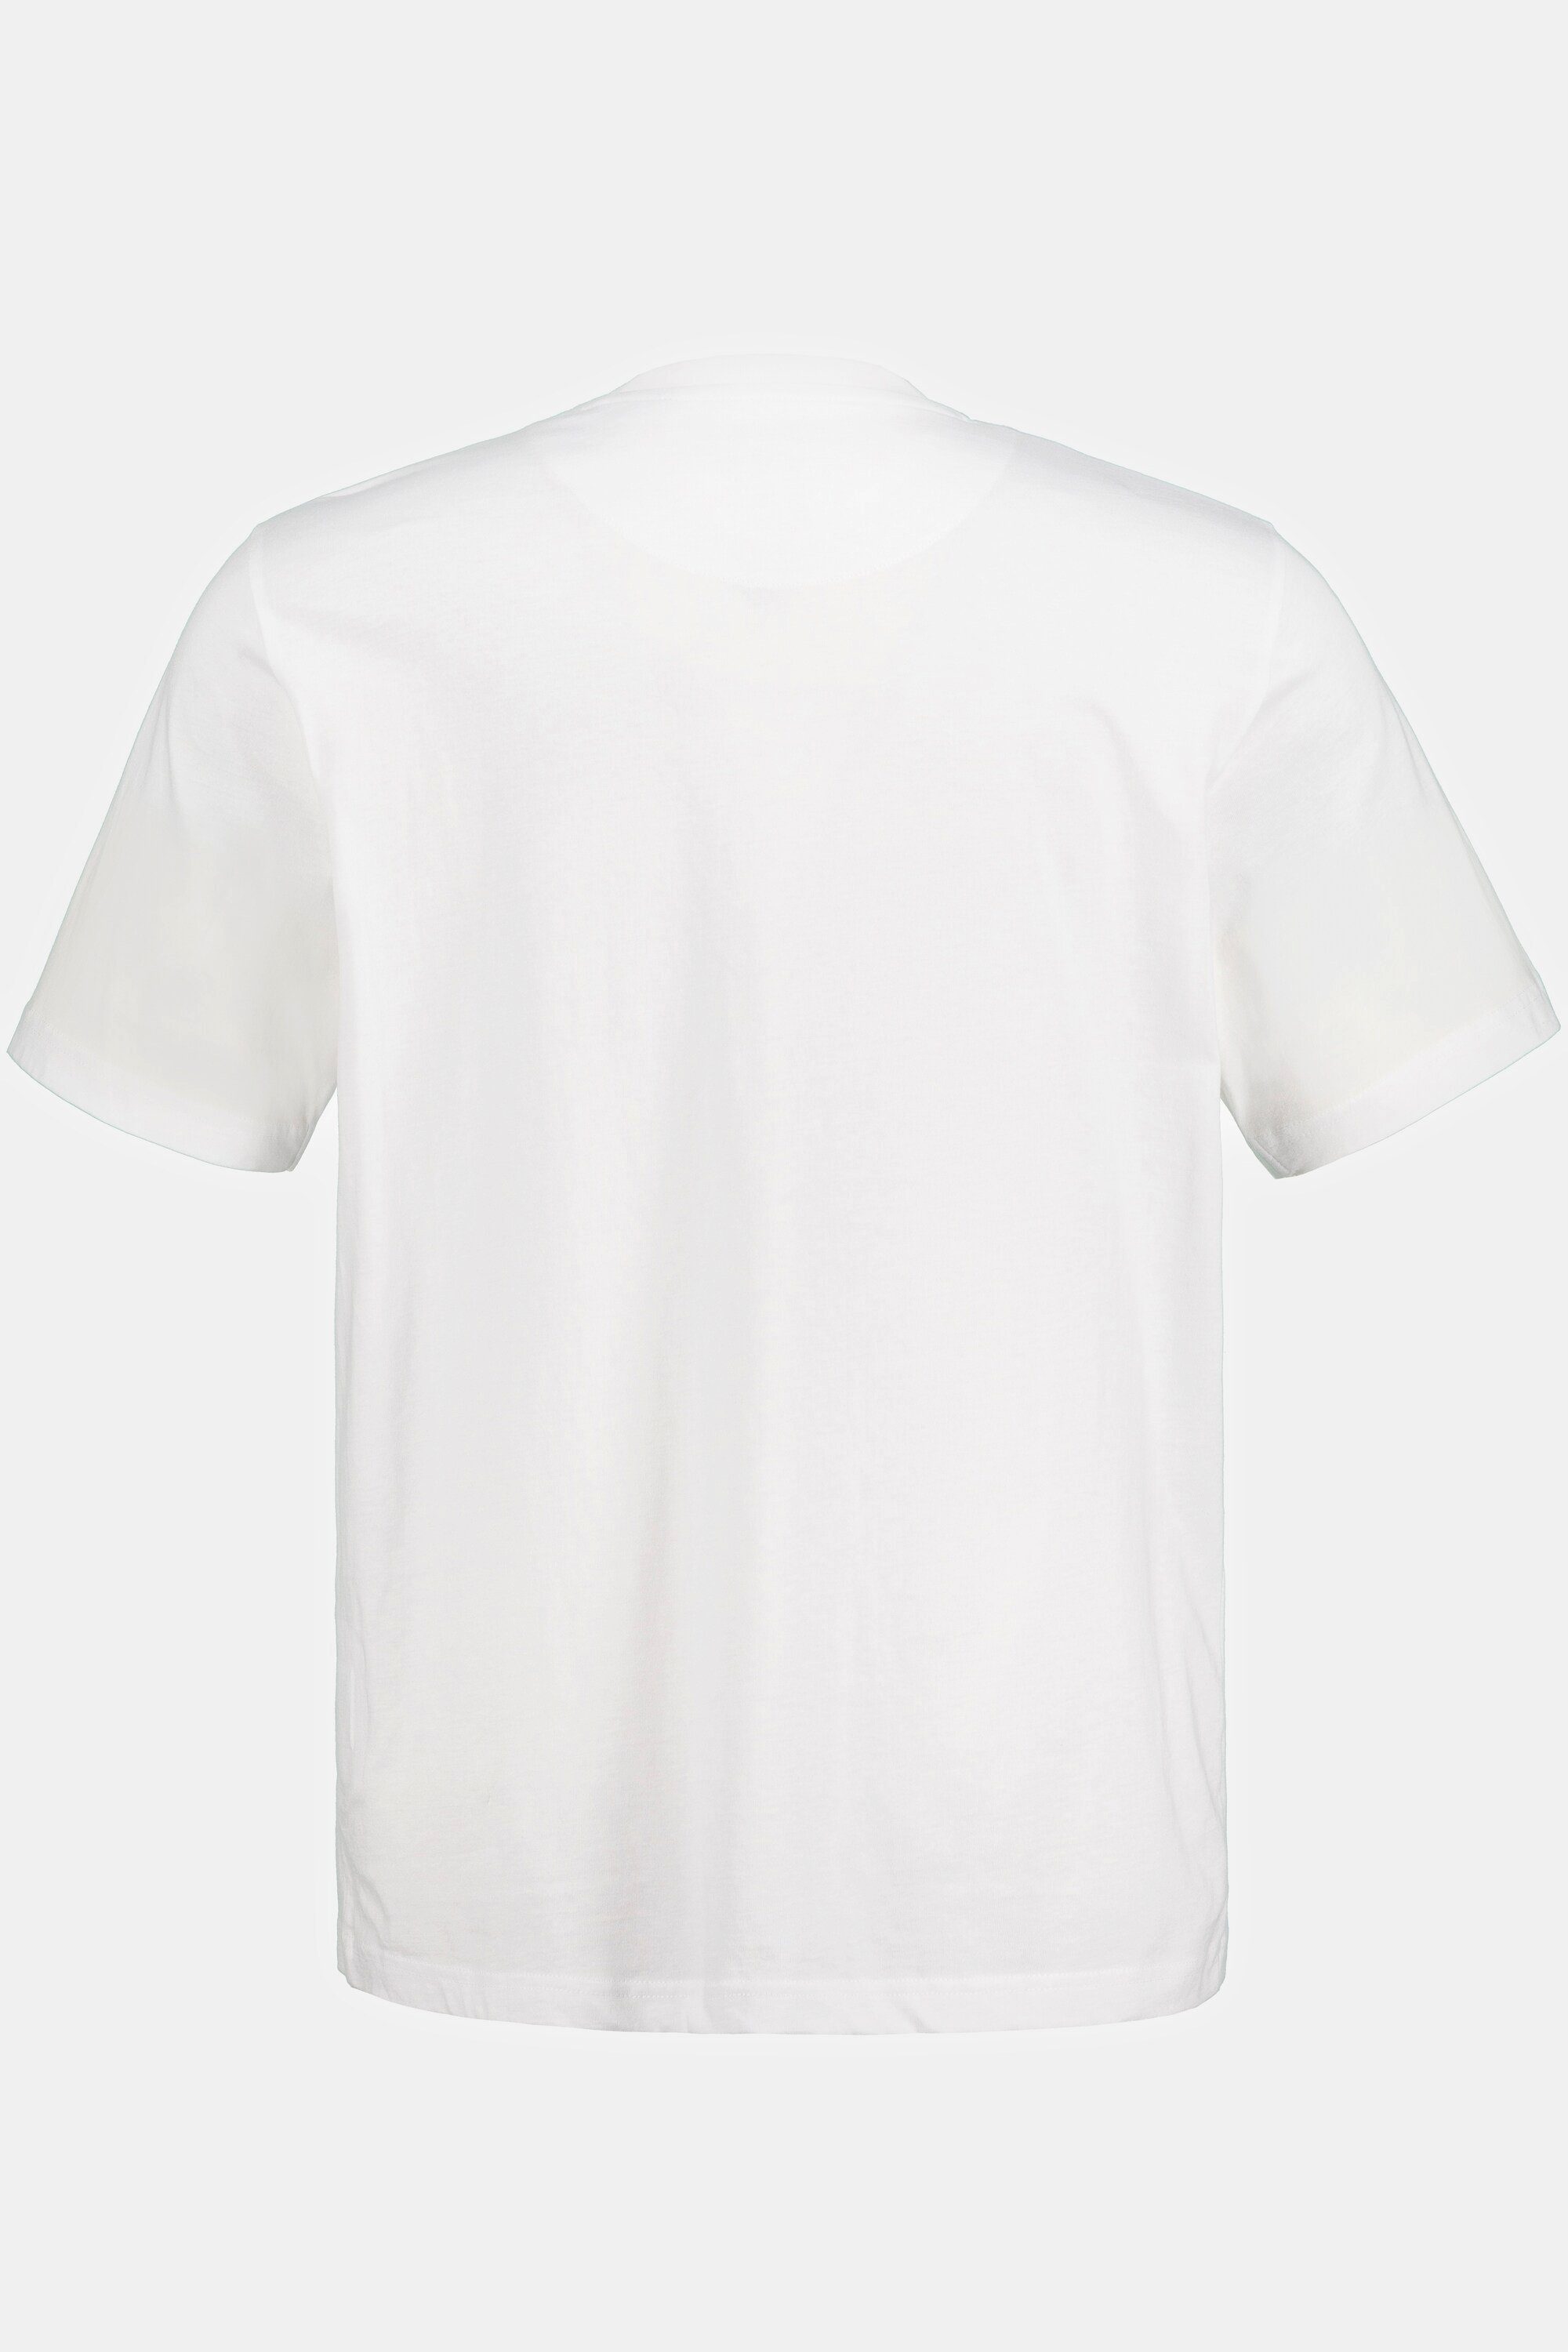 schneeweiß T-Shirt Brusttasche JP1880 Halbarm T-Shirt